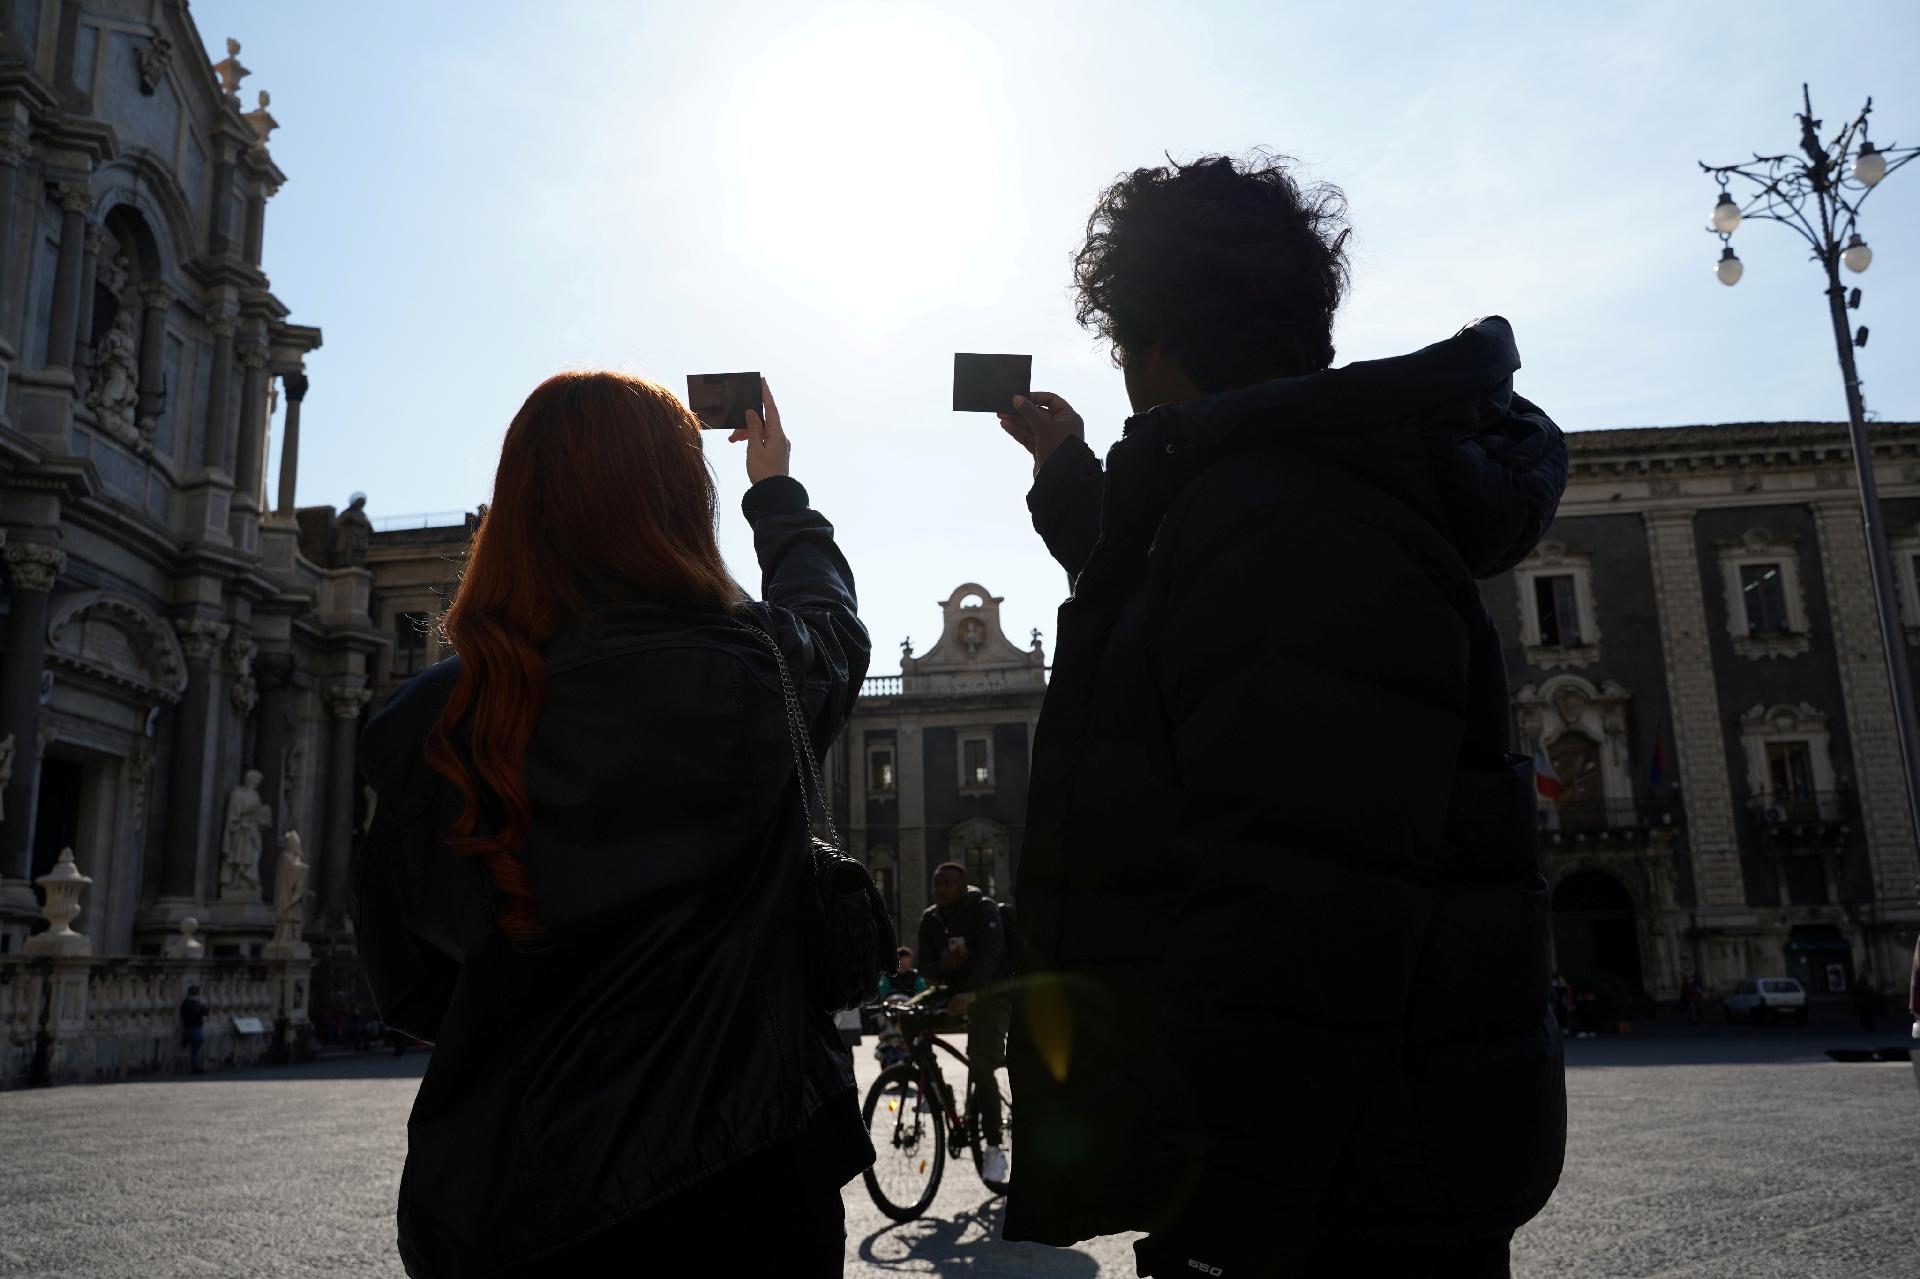 Observadores aguardan el eclipse parcial de luna en Catania, Italia - Antonio Parinello / Reuters